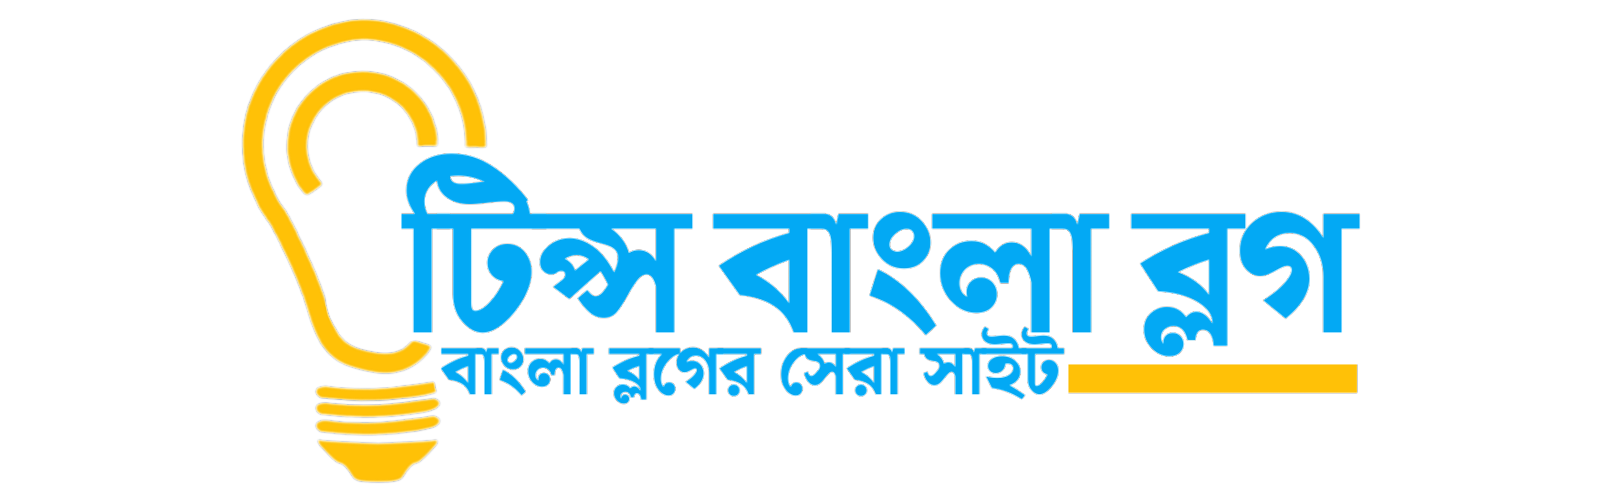 Tips bangla blog 